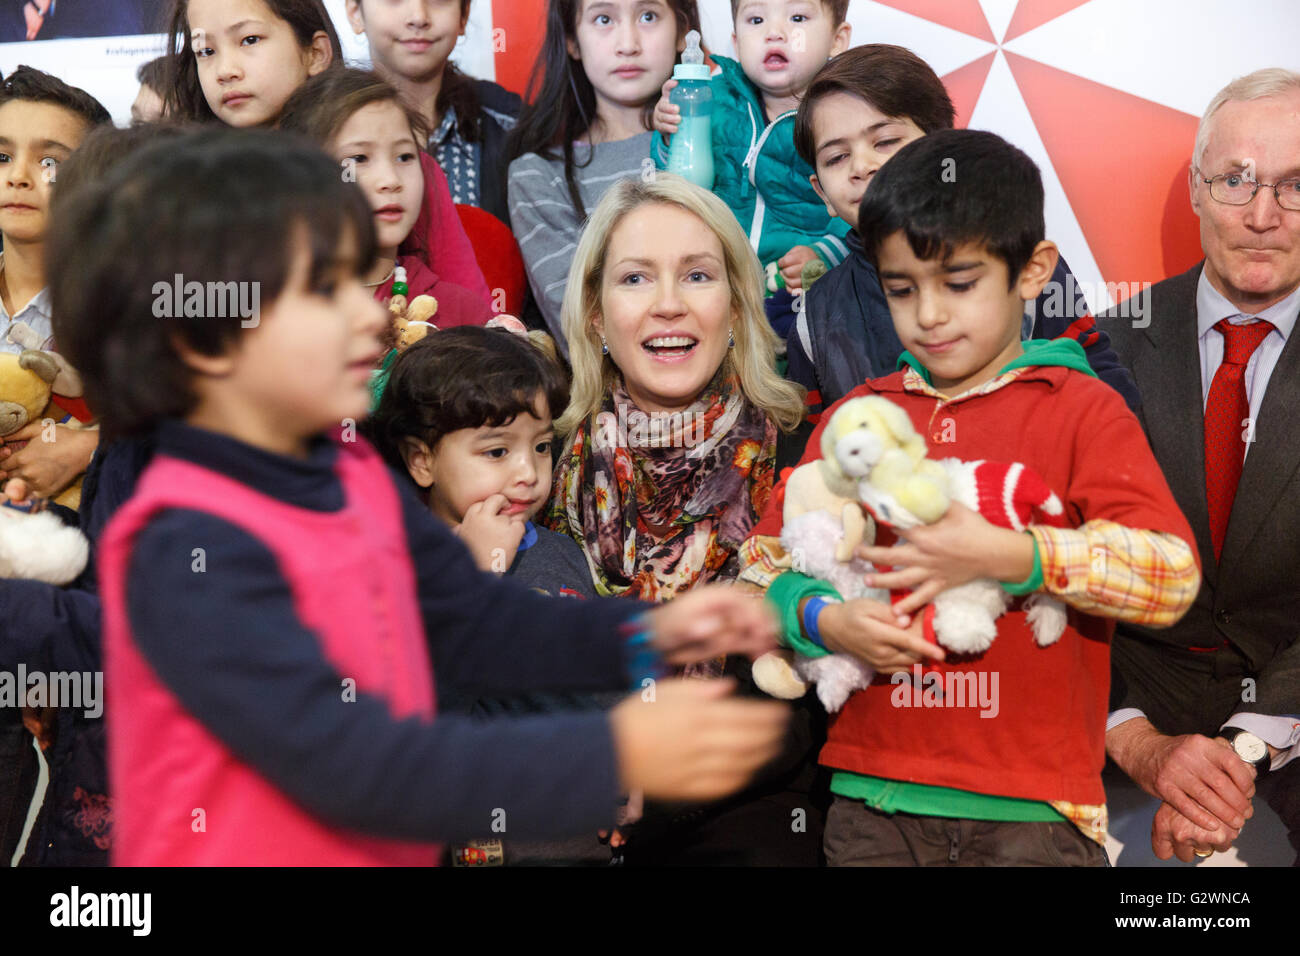 08.12.2015, Berlin, Berlin, Germania - Ministro della famiglia Manuela Schwesig (SPD) visitata presso il centro congressi di un ricovero per i rifugiati. In gestito da Malteser proprietà, circa 1.000 rifugiati registrati sono alloggiati, la maggior parte delle loro famiglie. Qui nella distribuzione di giocattoli morbidi per i 130 bambini presso l'albergo. 0DB151208D023CAROEX.JPG - non per la vendita in G E R M A N Y, A U S T R I A, S W I T Z e R L A N D [modello di rilascio: NO, la proprietà di rilascio: NO, (c) caro agenzia fotografica / Bleicker, http://www.caro-images.com, info@carofoto.pl - Qualsiasi uso di questa immagine è soggetto a royalty!] Foto Stock